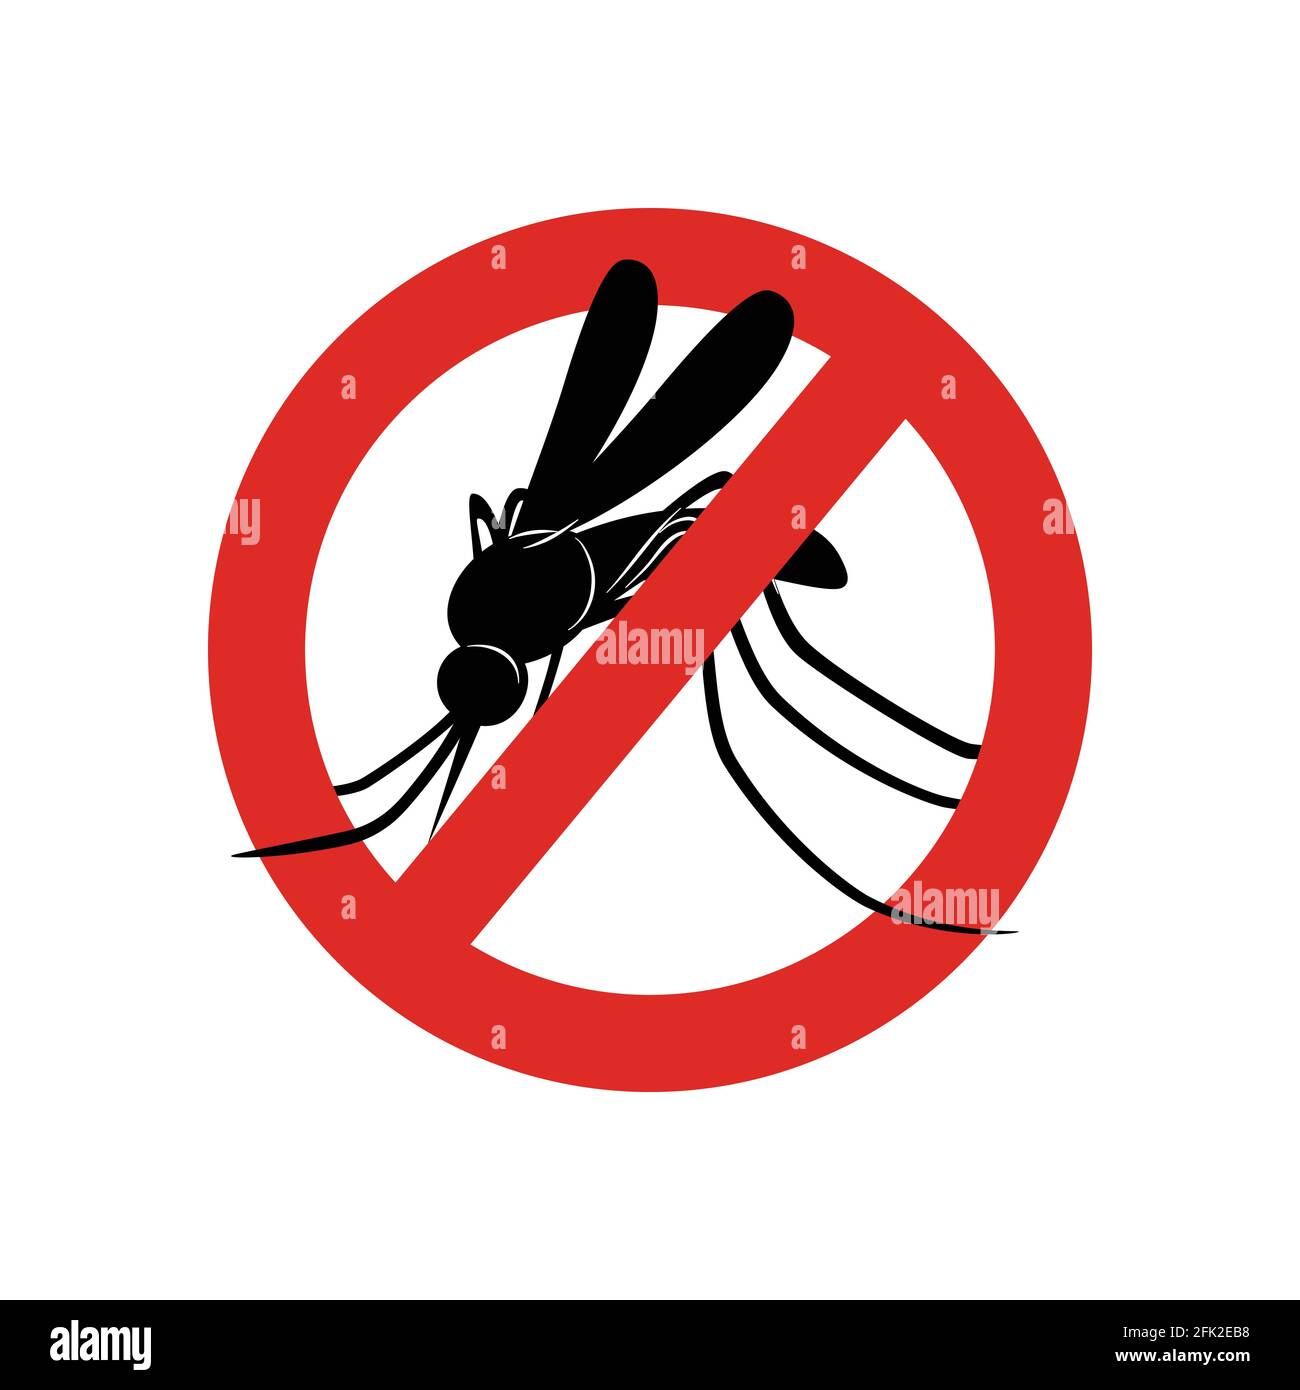 Moskitoschild. Achtung Symbole Insekten im roten Kreis Gift für Moskitos Warnung Vektor Konzept Bild Stock Vektor